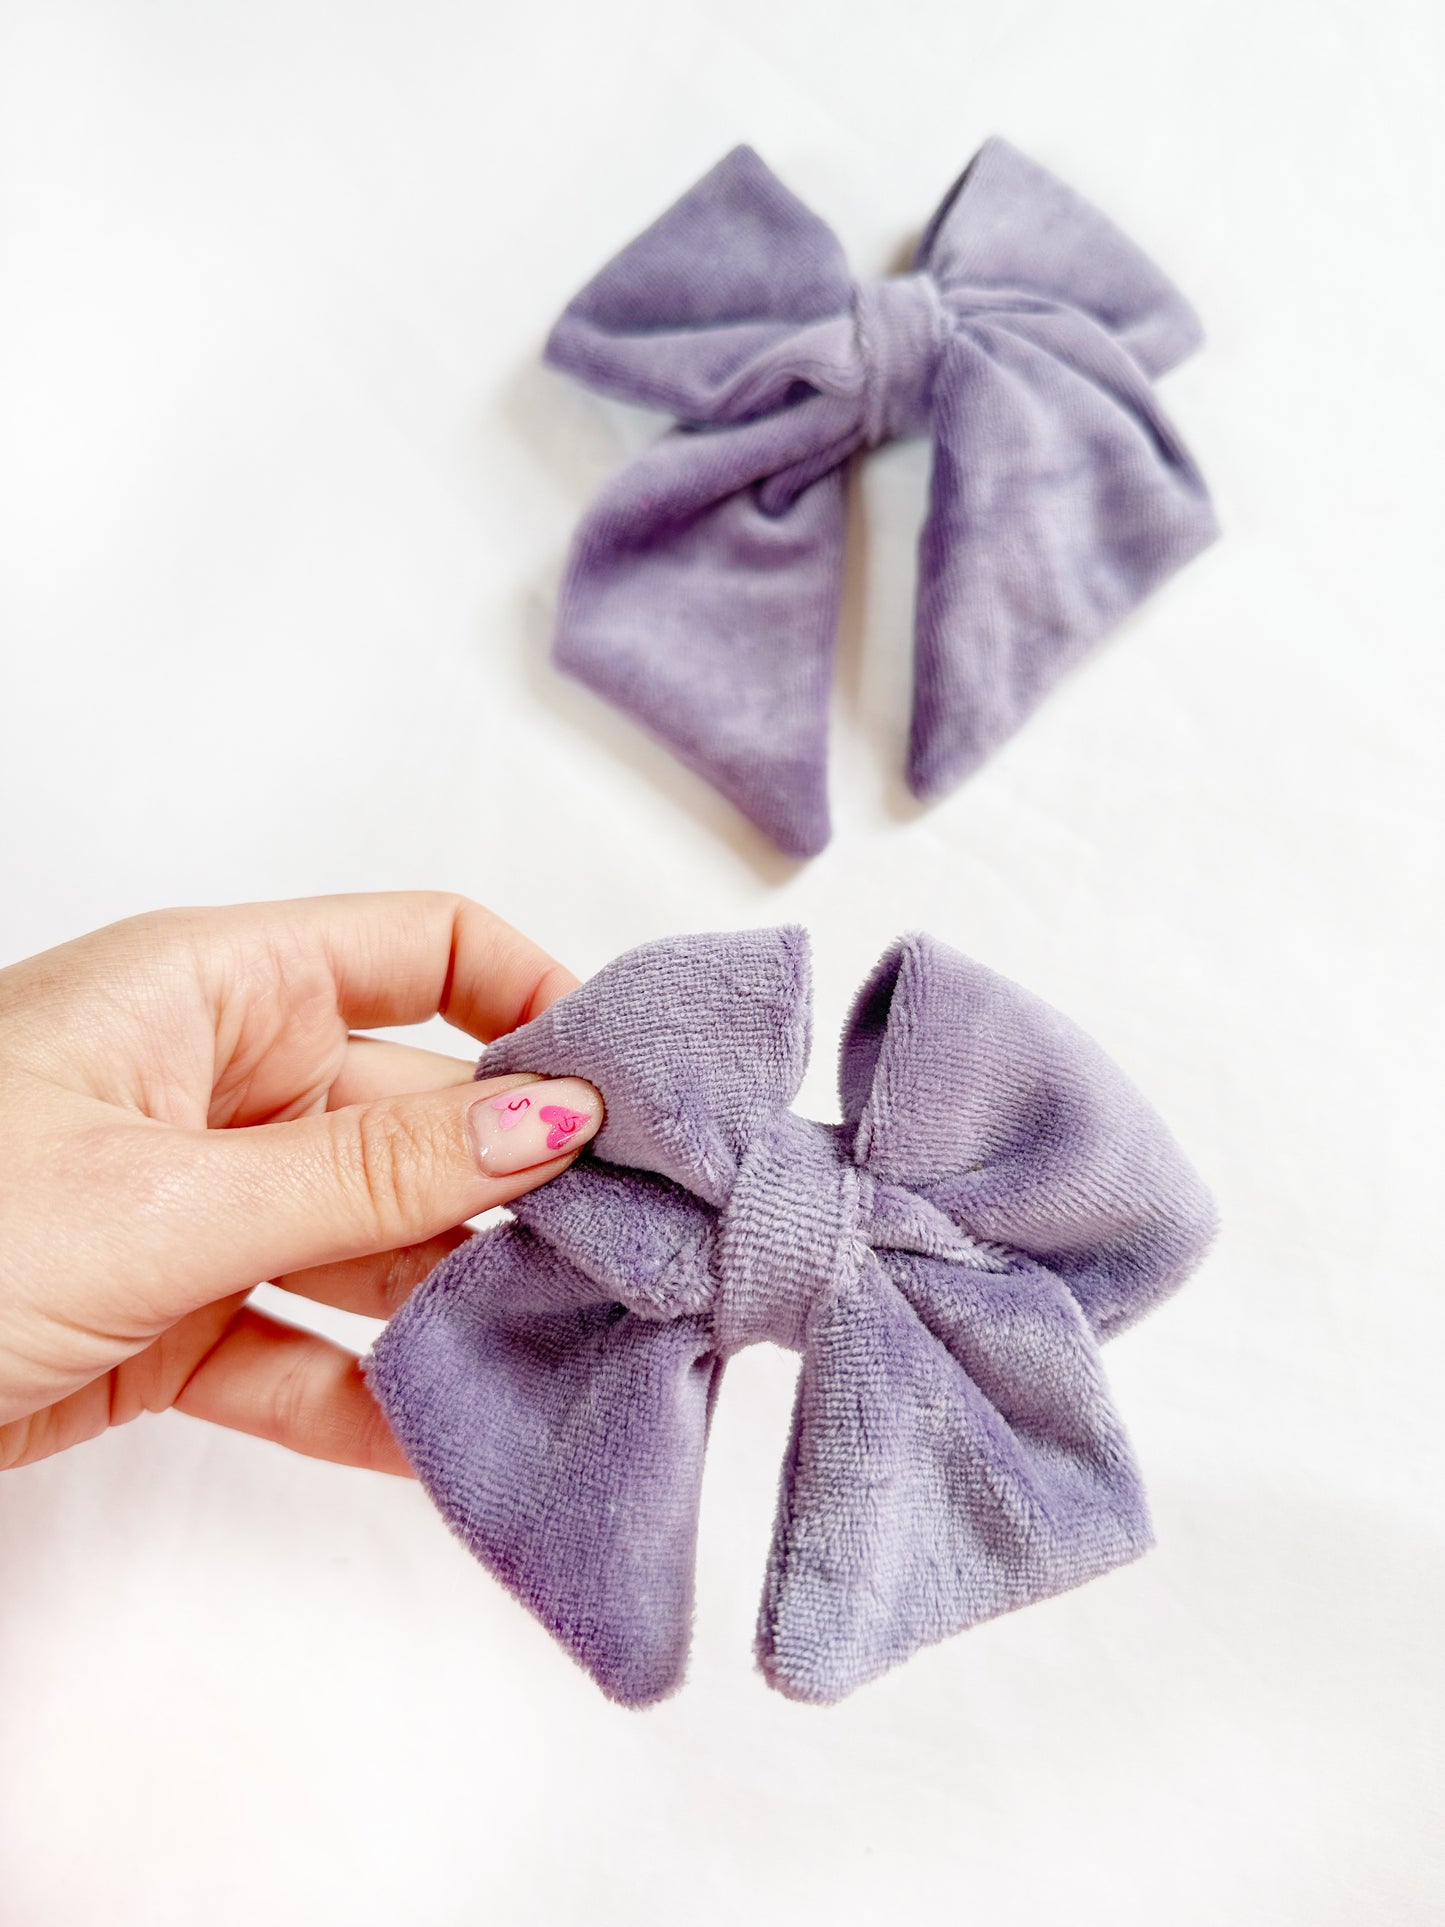 Hair Bow gift set in lavender velour